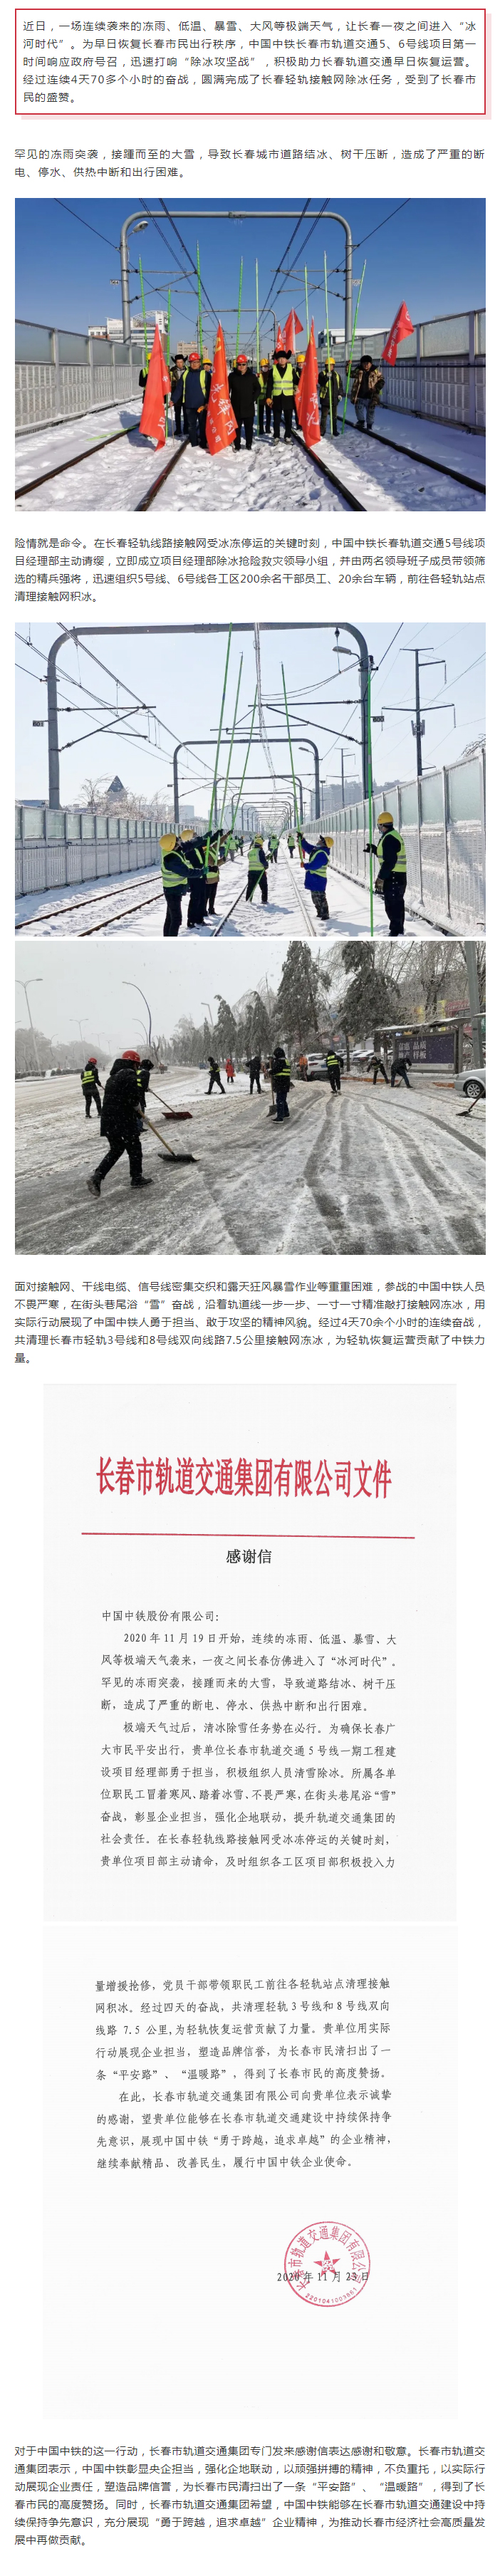 中國中鐵長春軌道交通5、6號線項目在除冰攻堅戰中彰顯央企擔當